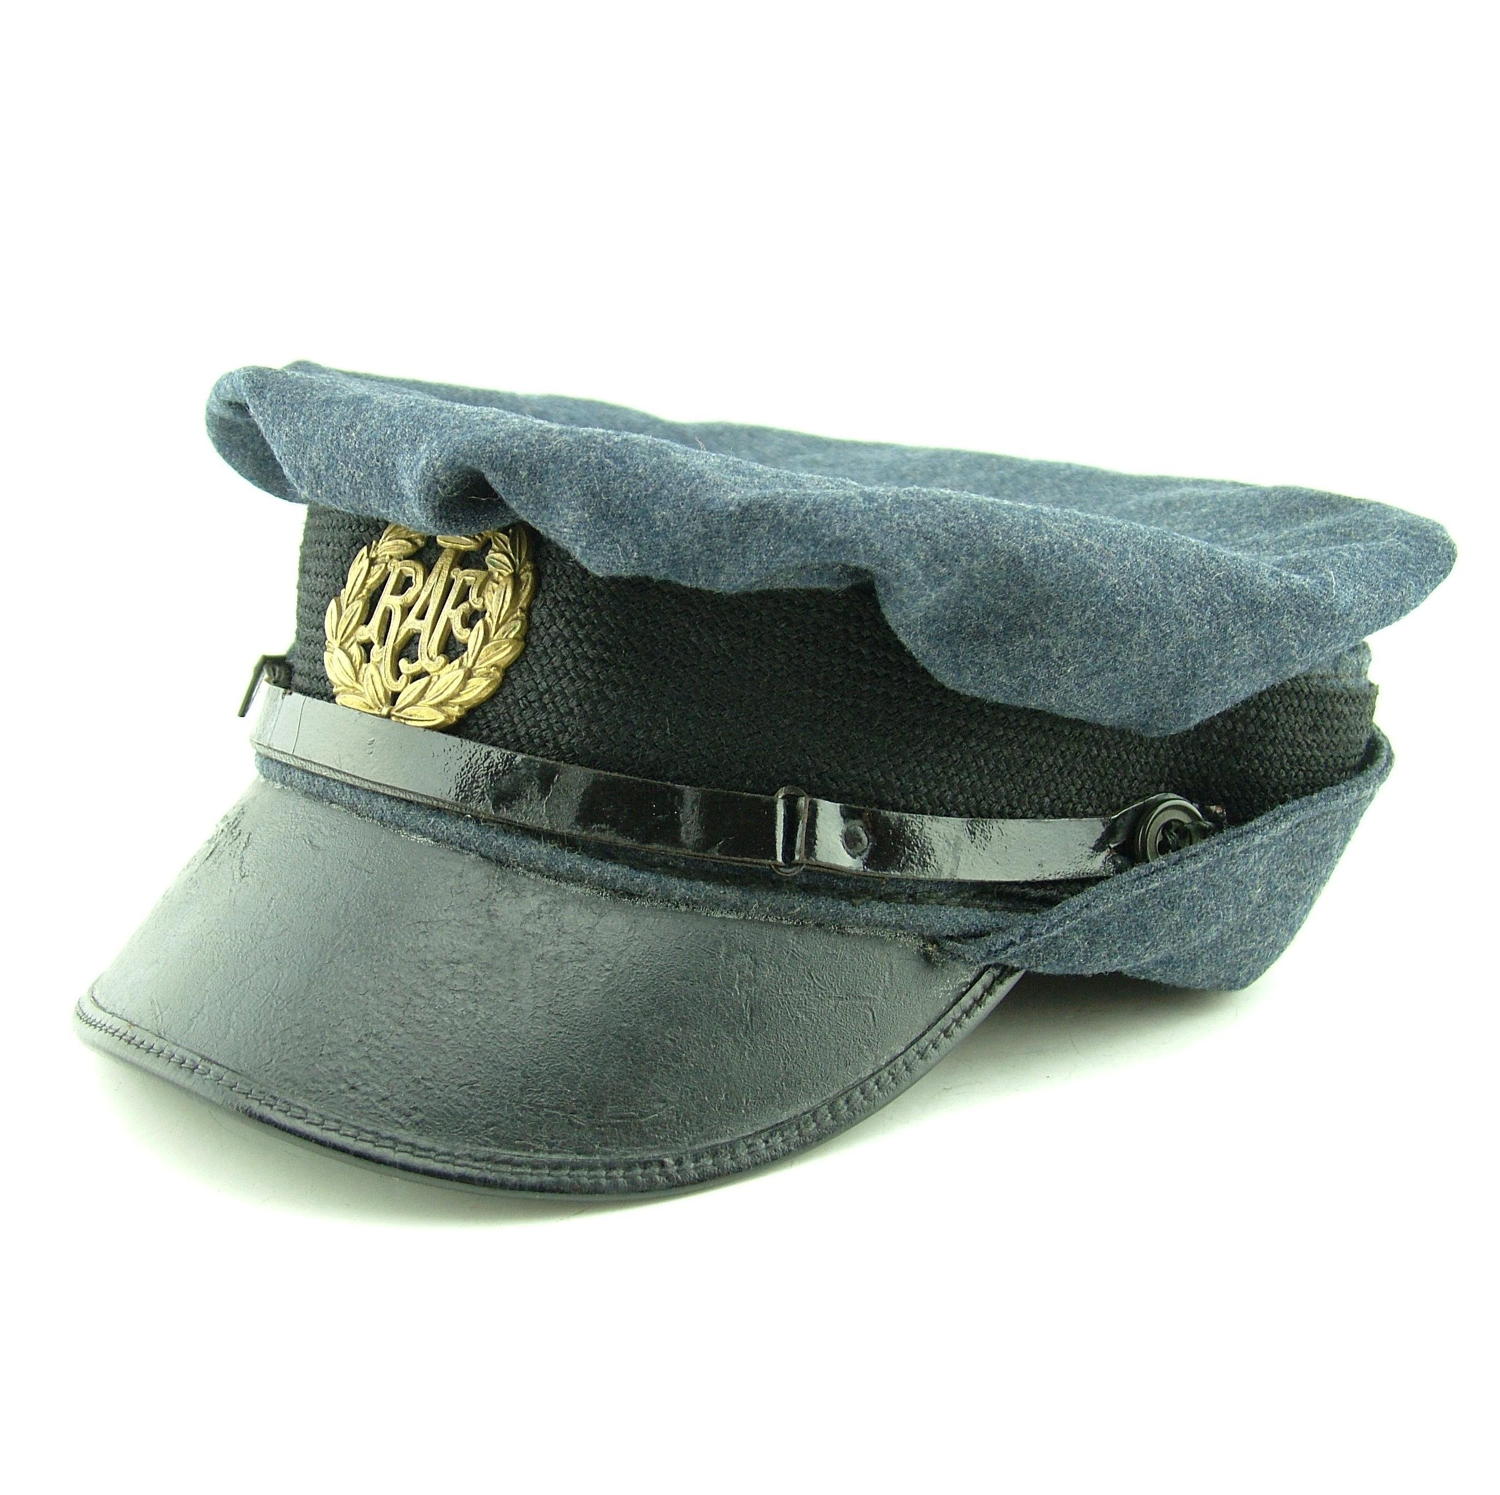 WAAF airwoman's service dress cap